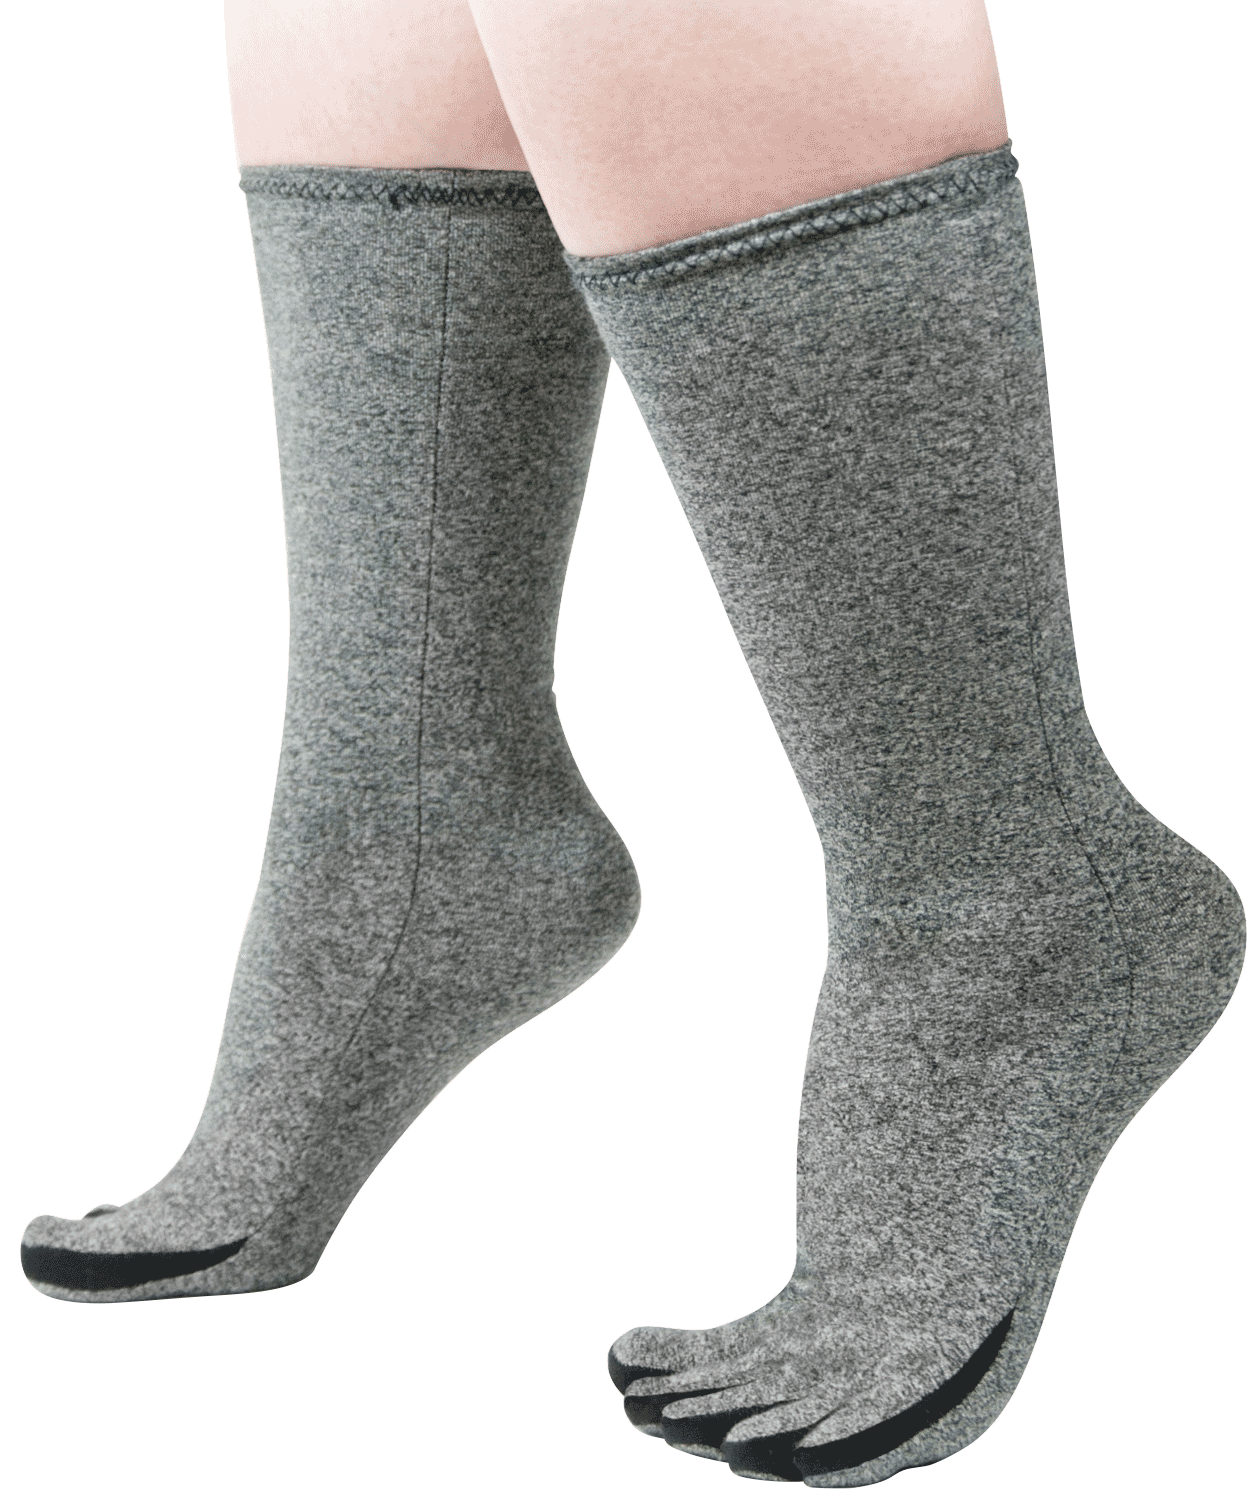 IMAK Arthritis Socks, A20192, Large (10-14 Men's/12-15.5 Women's) - 1 Pair